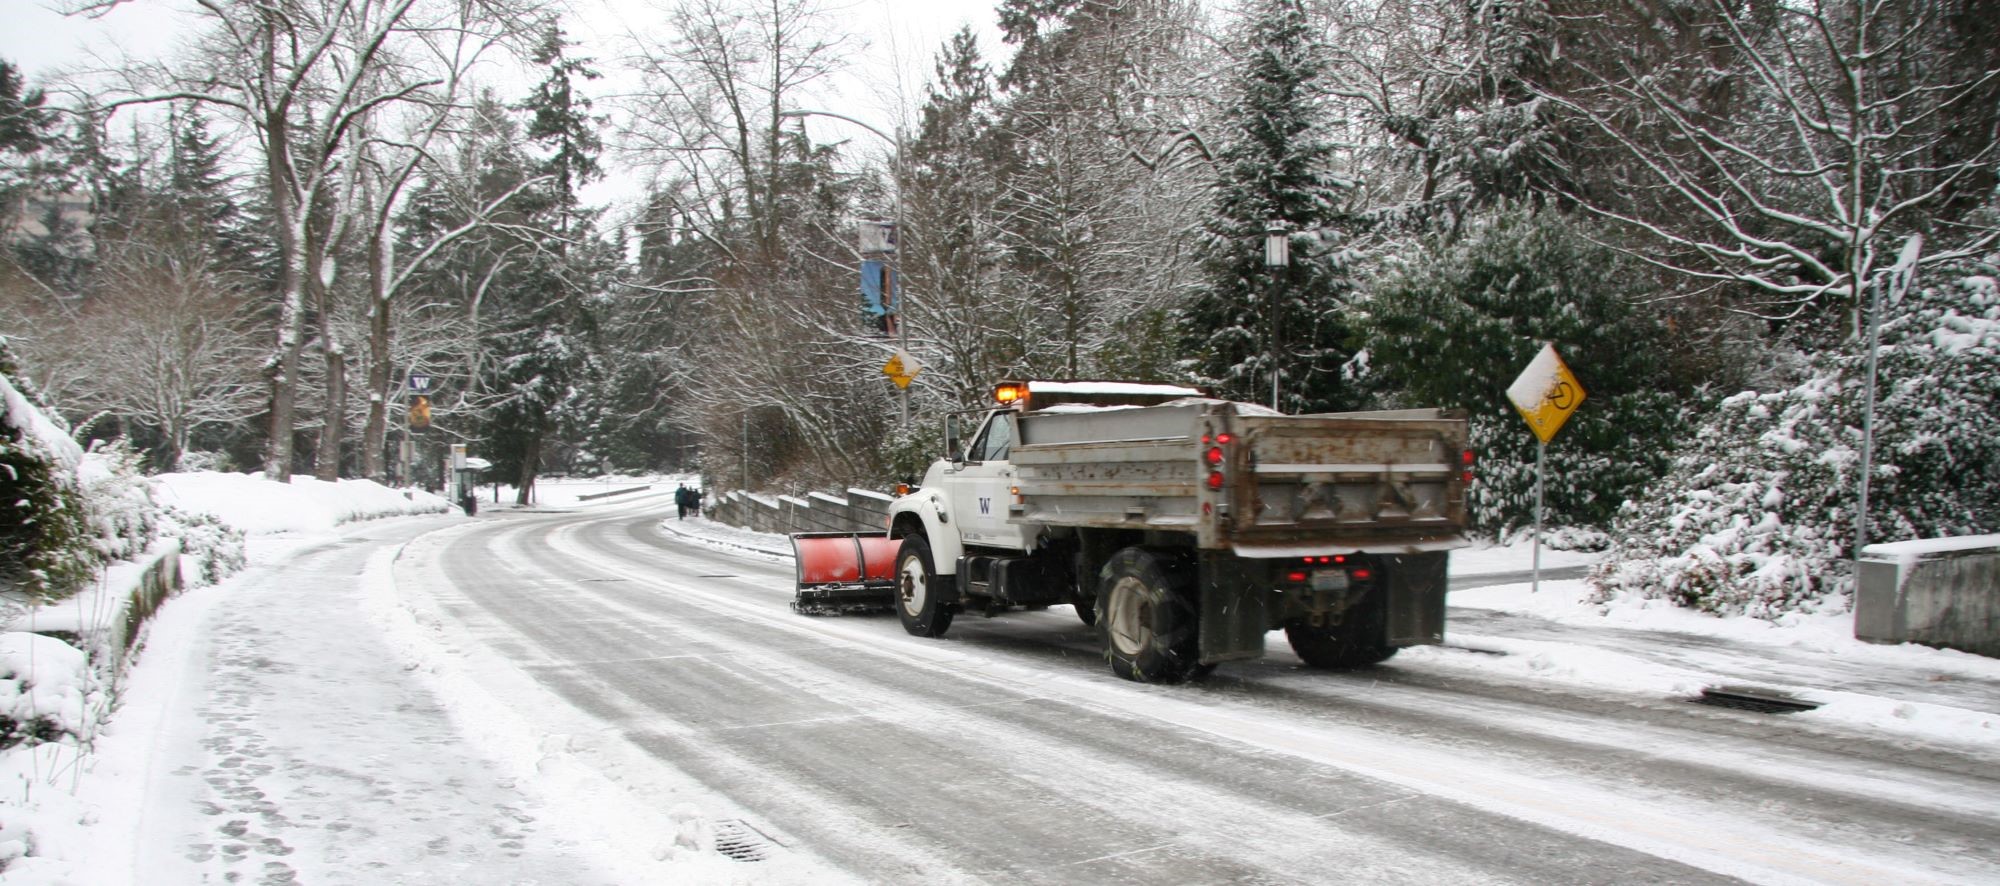 Snow plow truck on snowy Pend Orielle Way